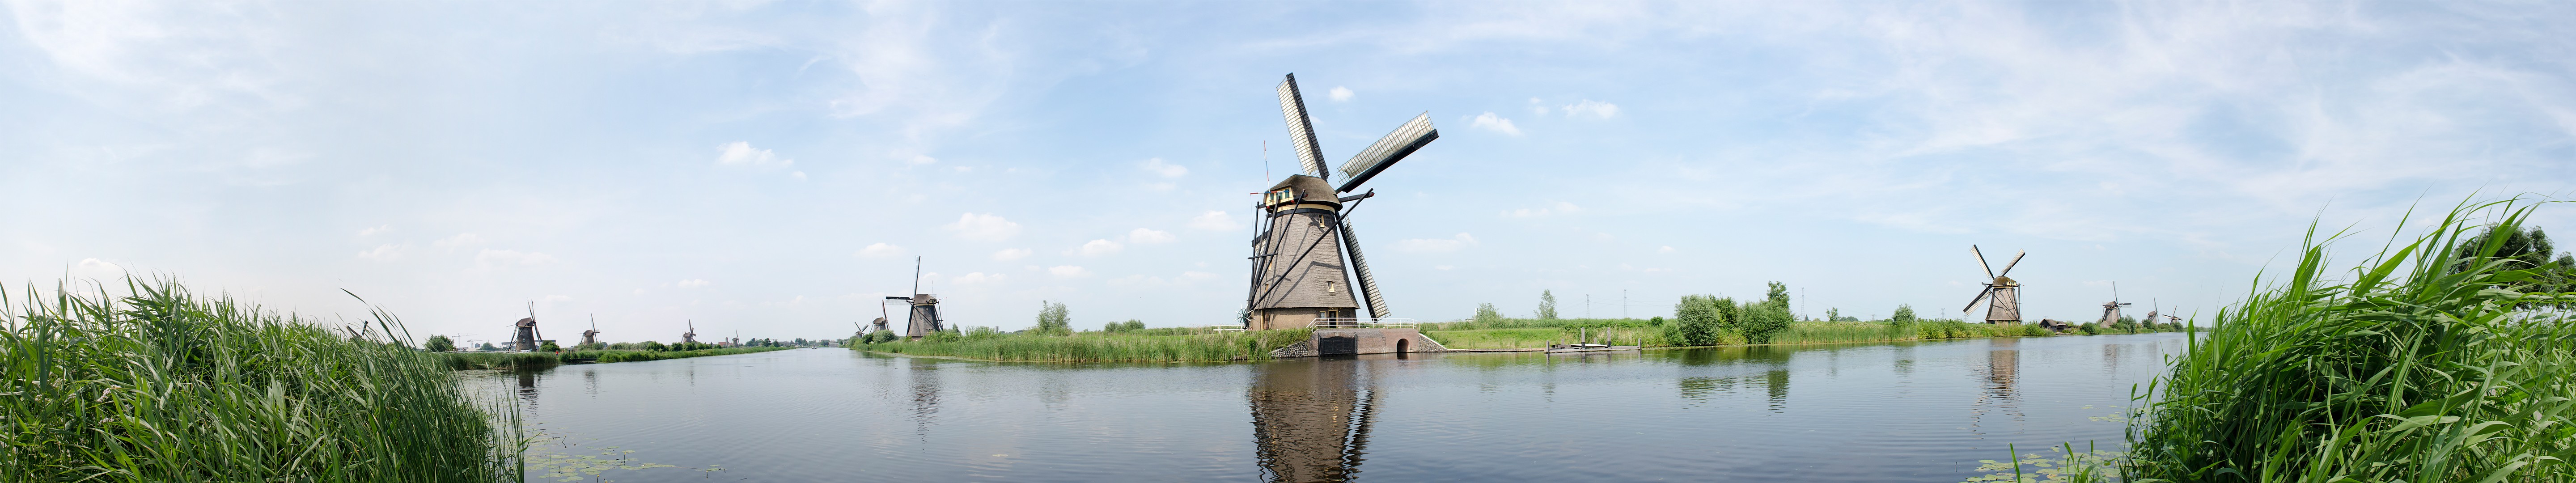 Netherlands, Dutch, Windmill, Grass, Water, Canal, Sky, Kinderdijk, Panorama, Europe Wallpaper